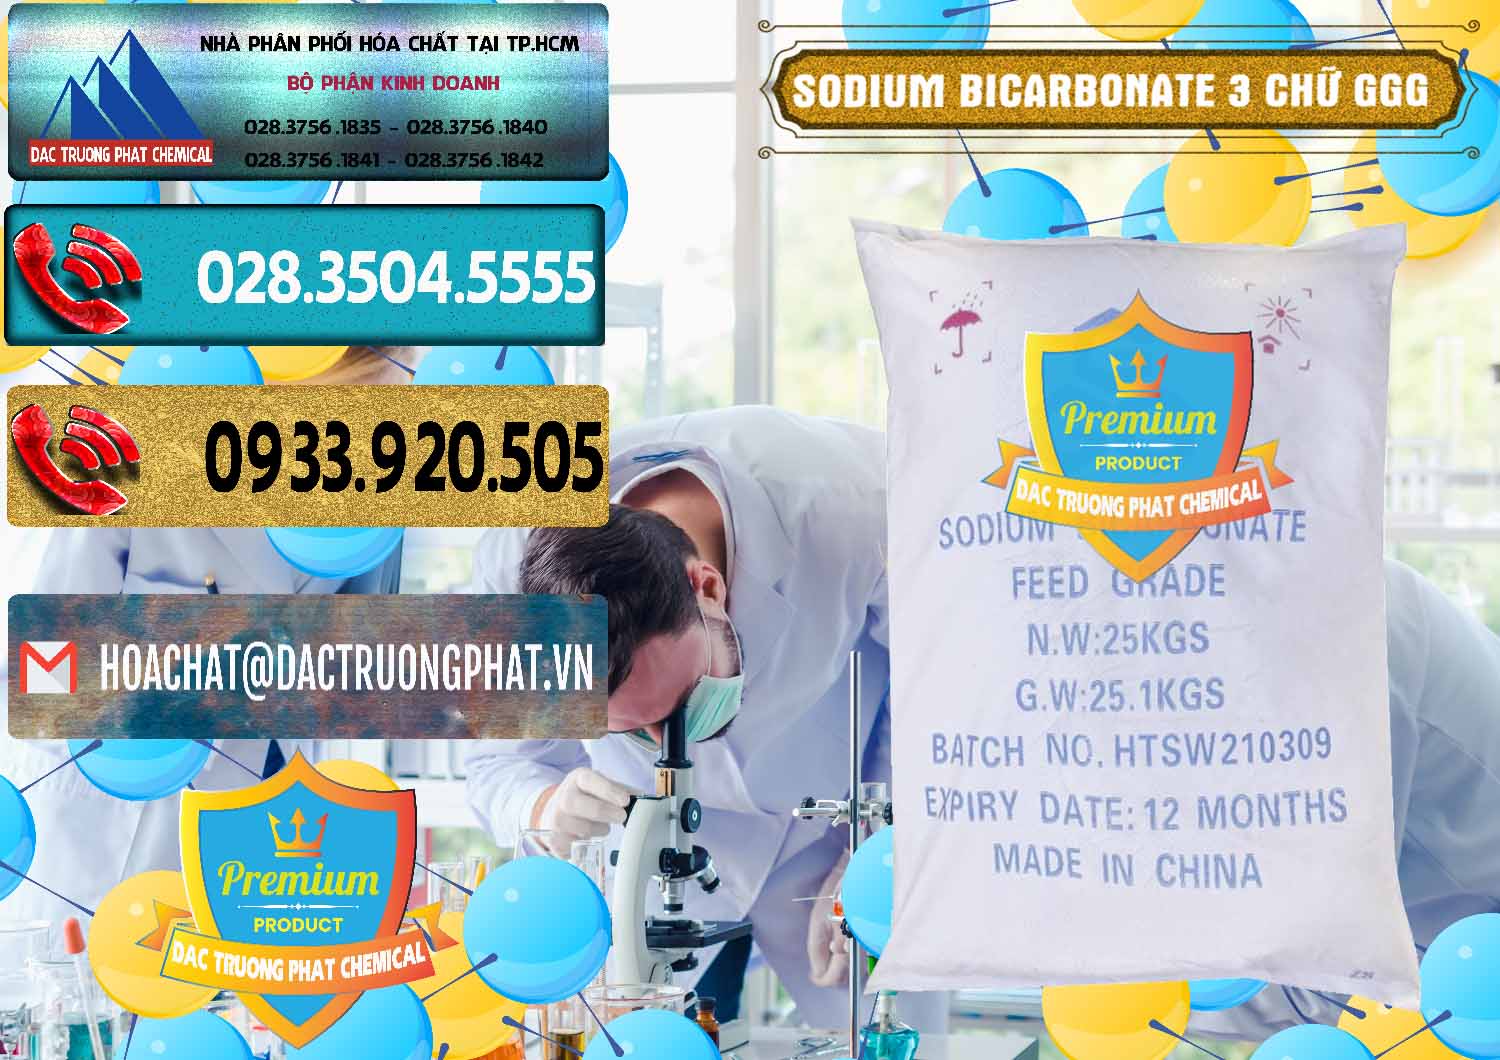 Nơi chuyên bán _ cung cấp Sodium Bicarbonate – Bicar NaHCO3 Food Grade 3 Chữ GGG Trung Quốc China - 0259 - Cty chuyên phân phối _ kinh doanh hóa chất tại TP.HCM - hoachatdetnhuom.com